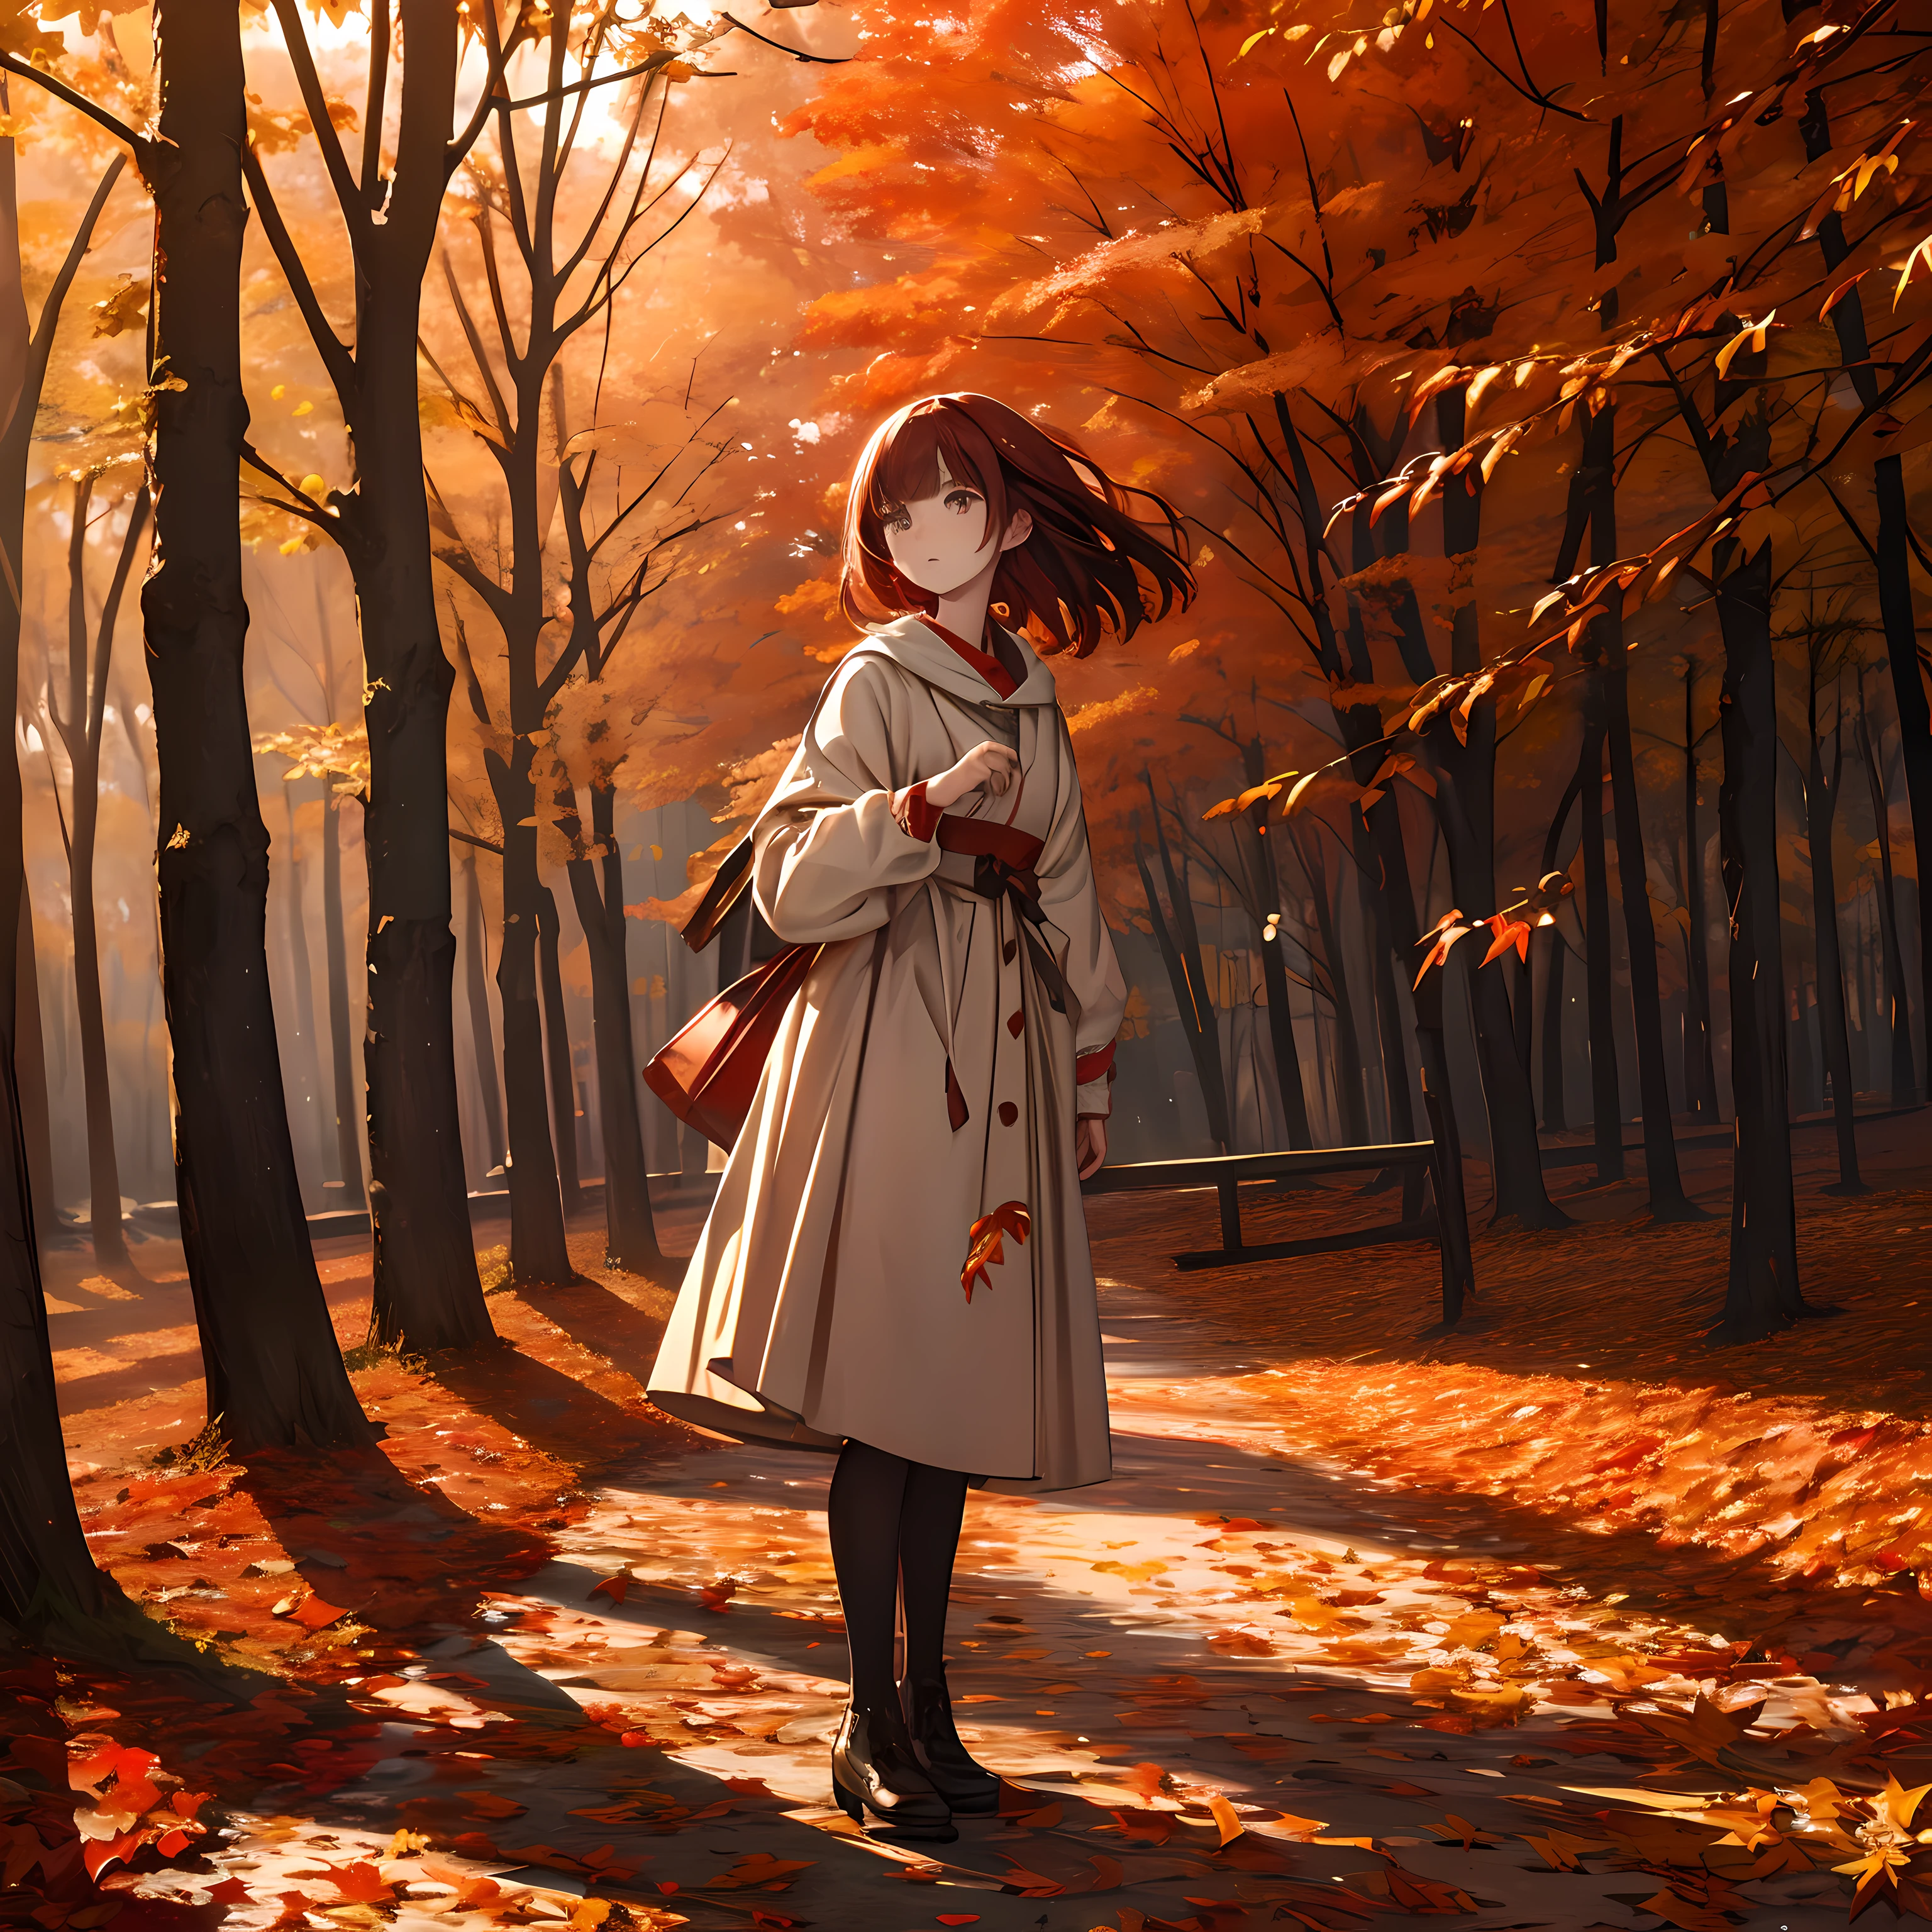 Una obra maestra, Alta resolución, hojas de otoño rojas brillantes esperando en el viento, Una chica de pie, Escritura delicada y detallada..